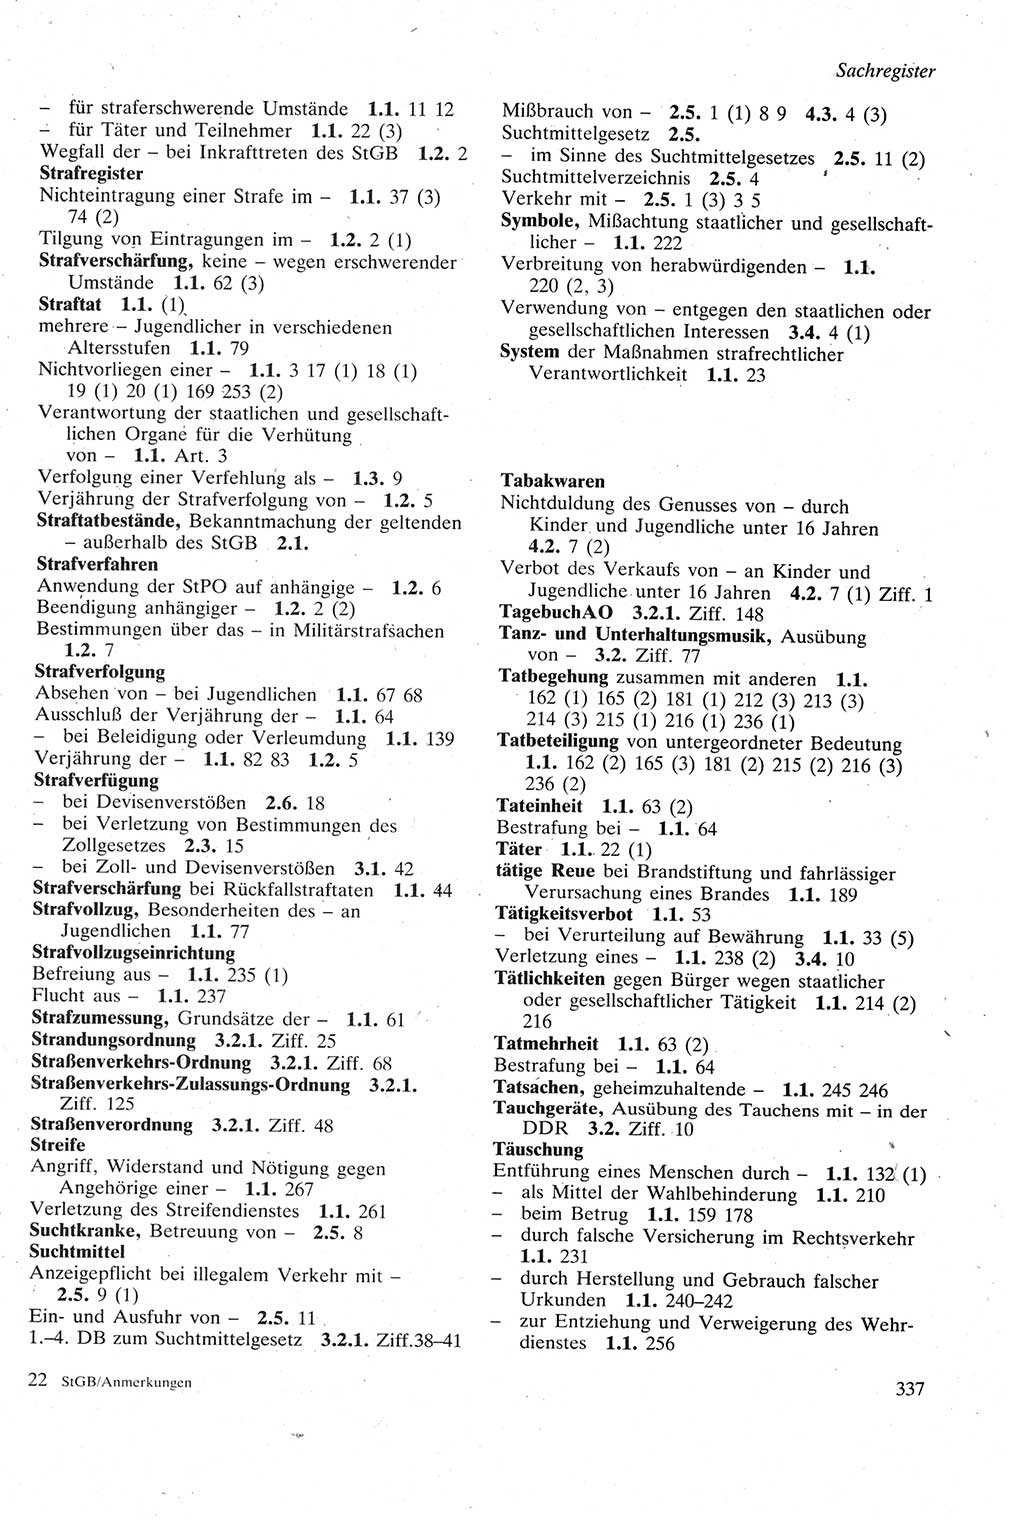 Strafgesetzbuch (StGB) der Deutschen Demokratischen Republik (DDR) sowie angrenzende Gesetze und Bestimmungen 1979, Seite 337 (StGB DDR Ges. Best. 1979, S. 337)